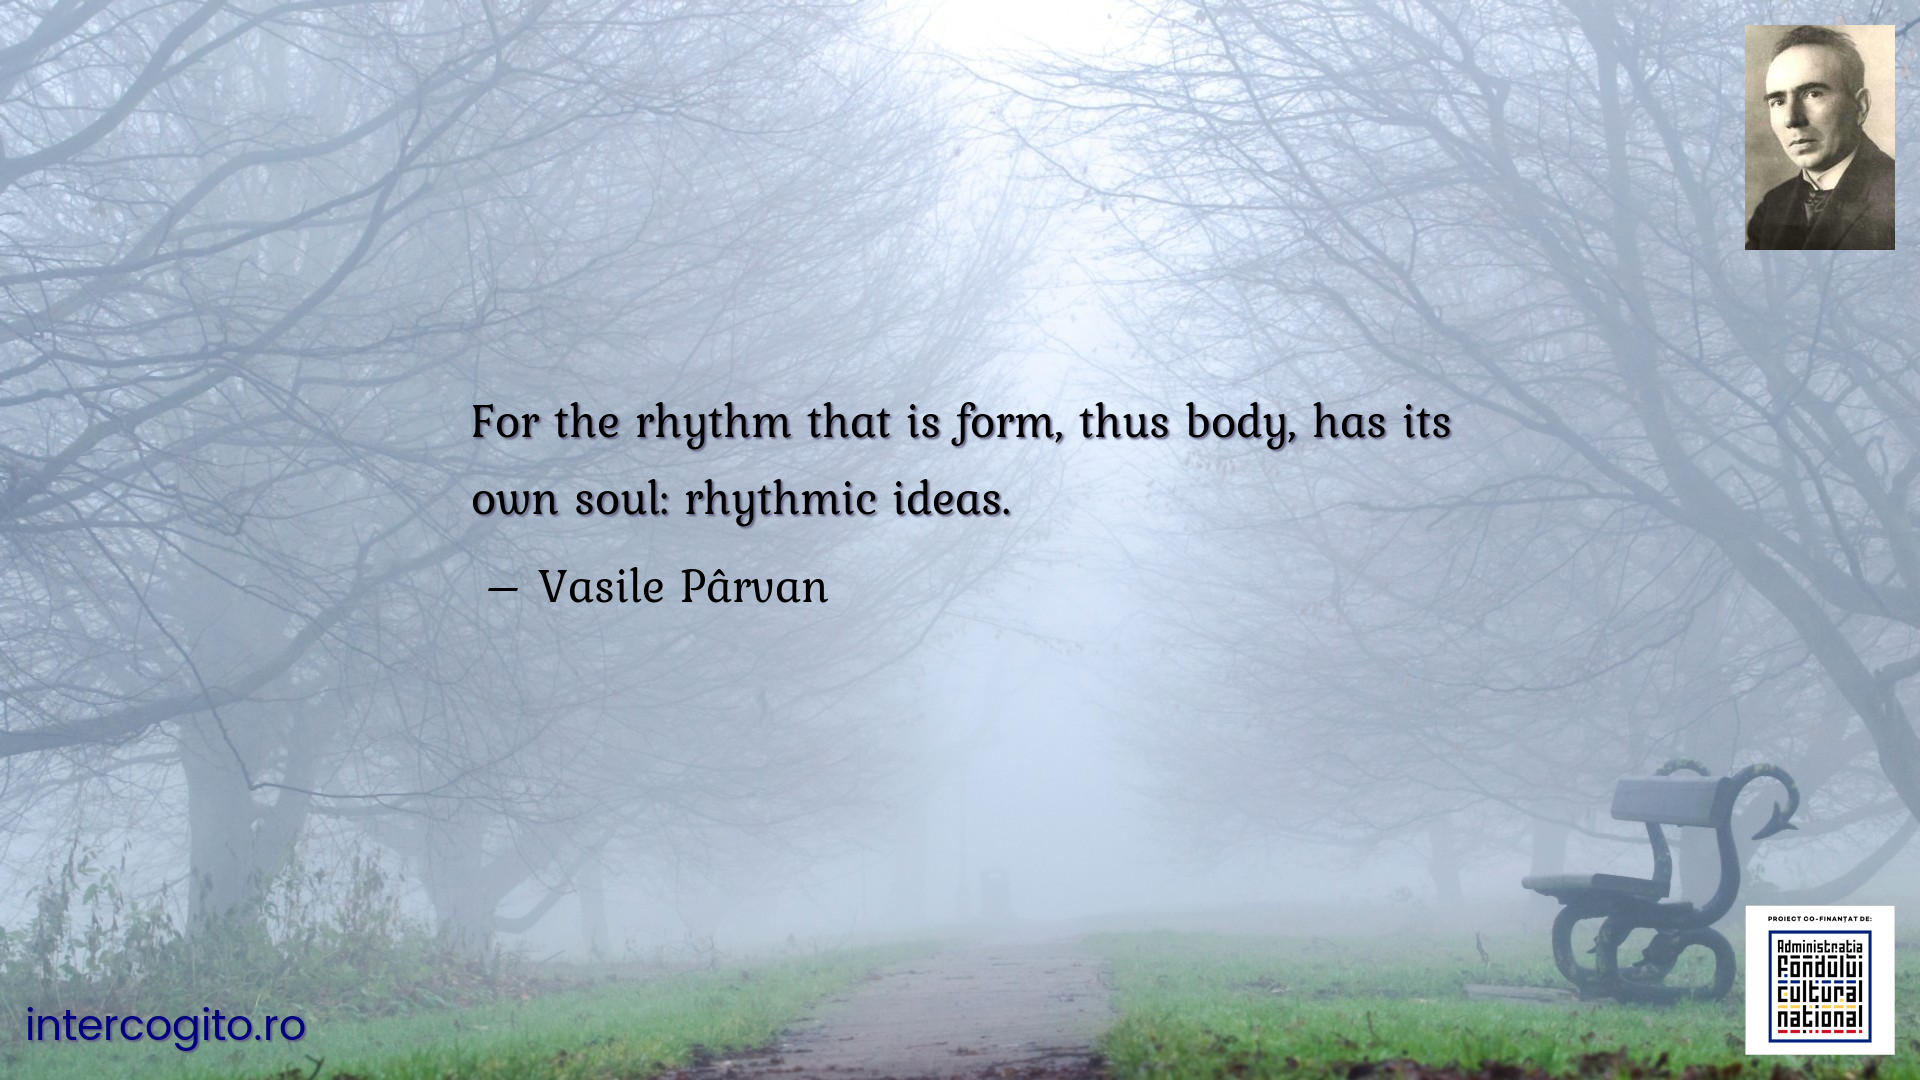 For the rhythm that is form, thus body, has its own soul: rhythmic ideas.